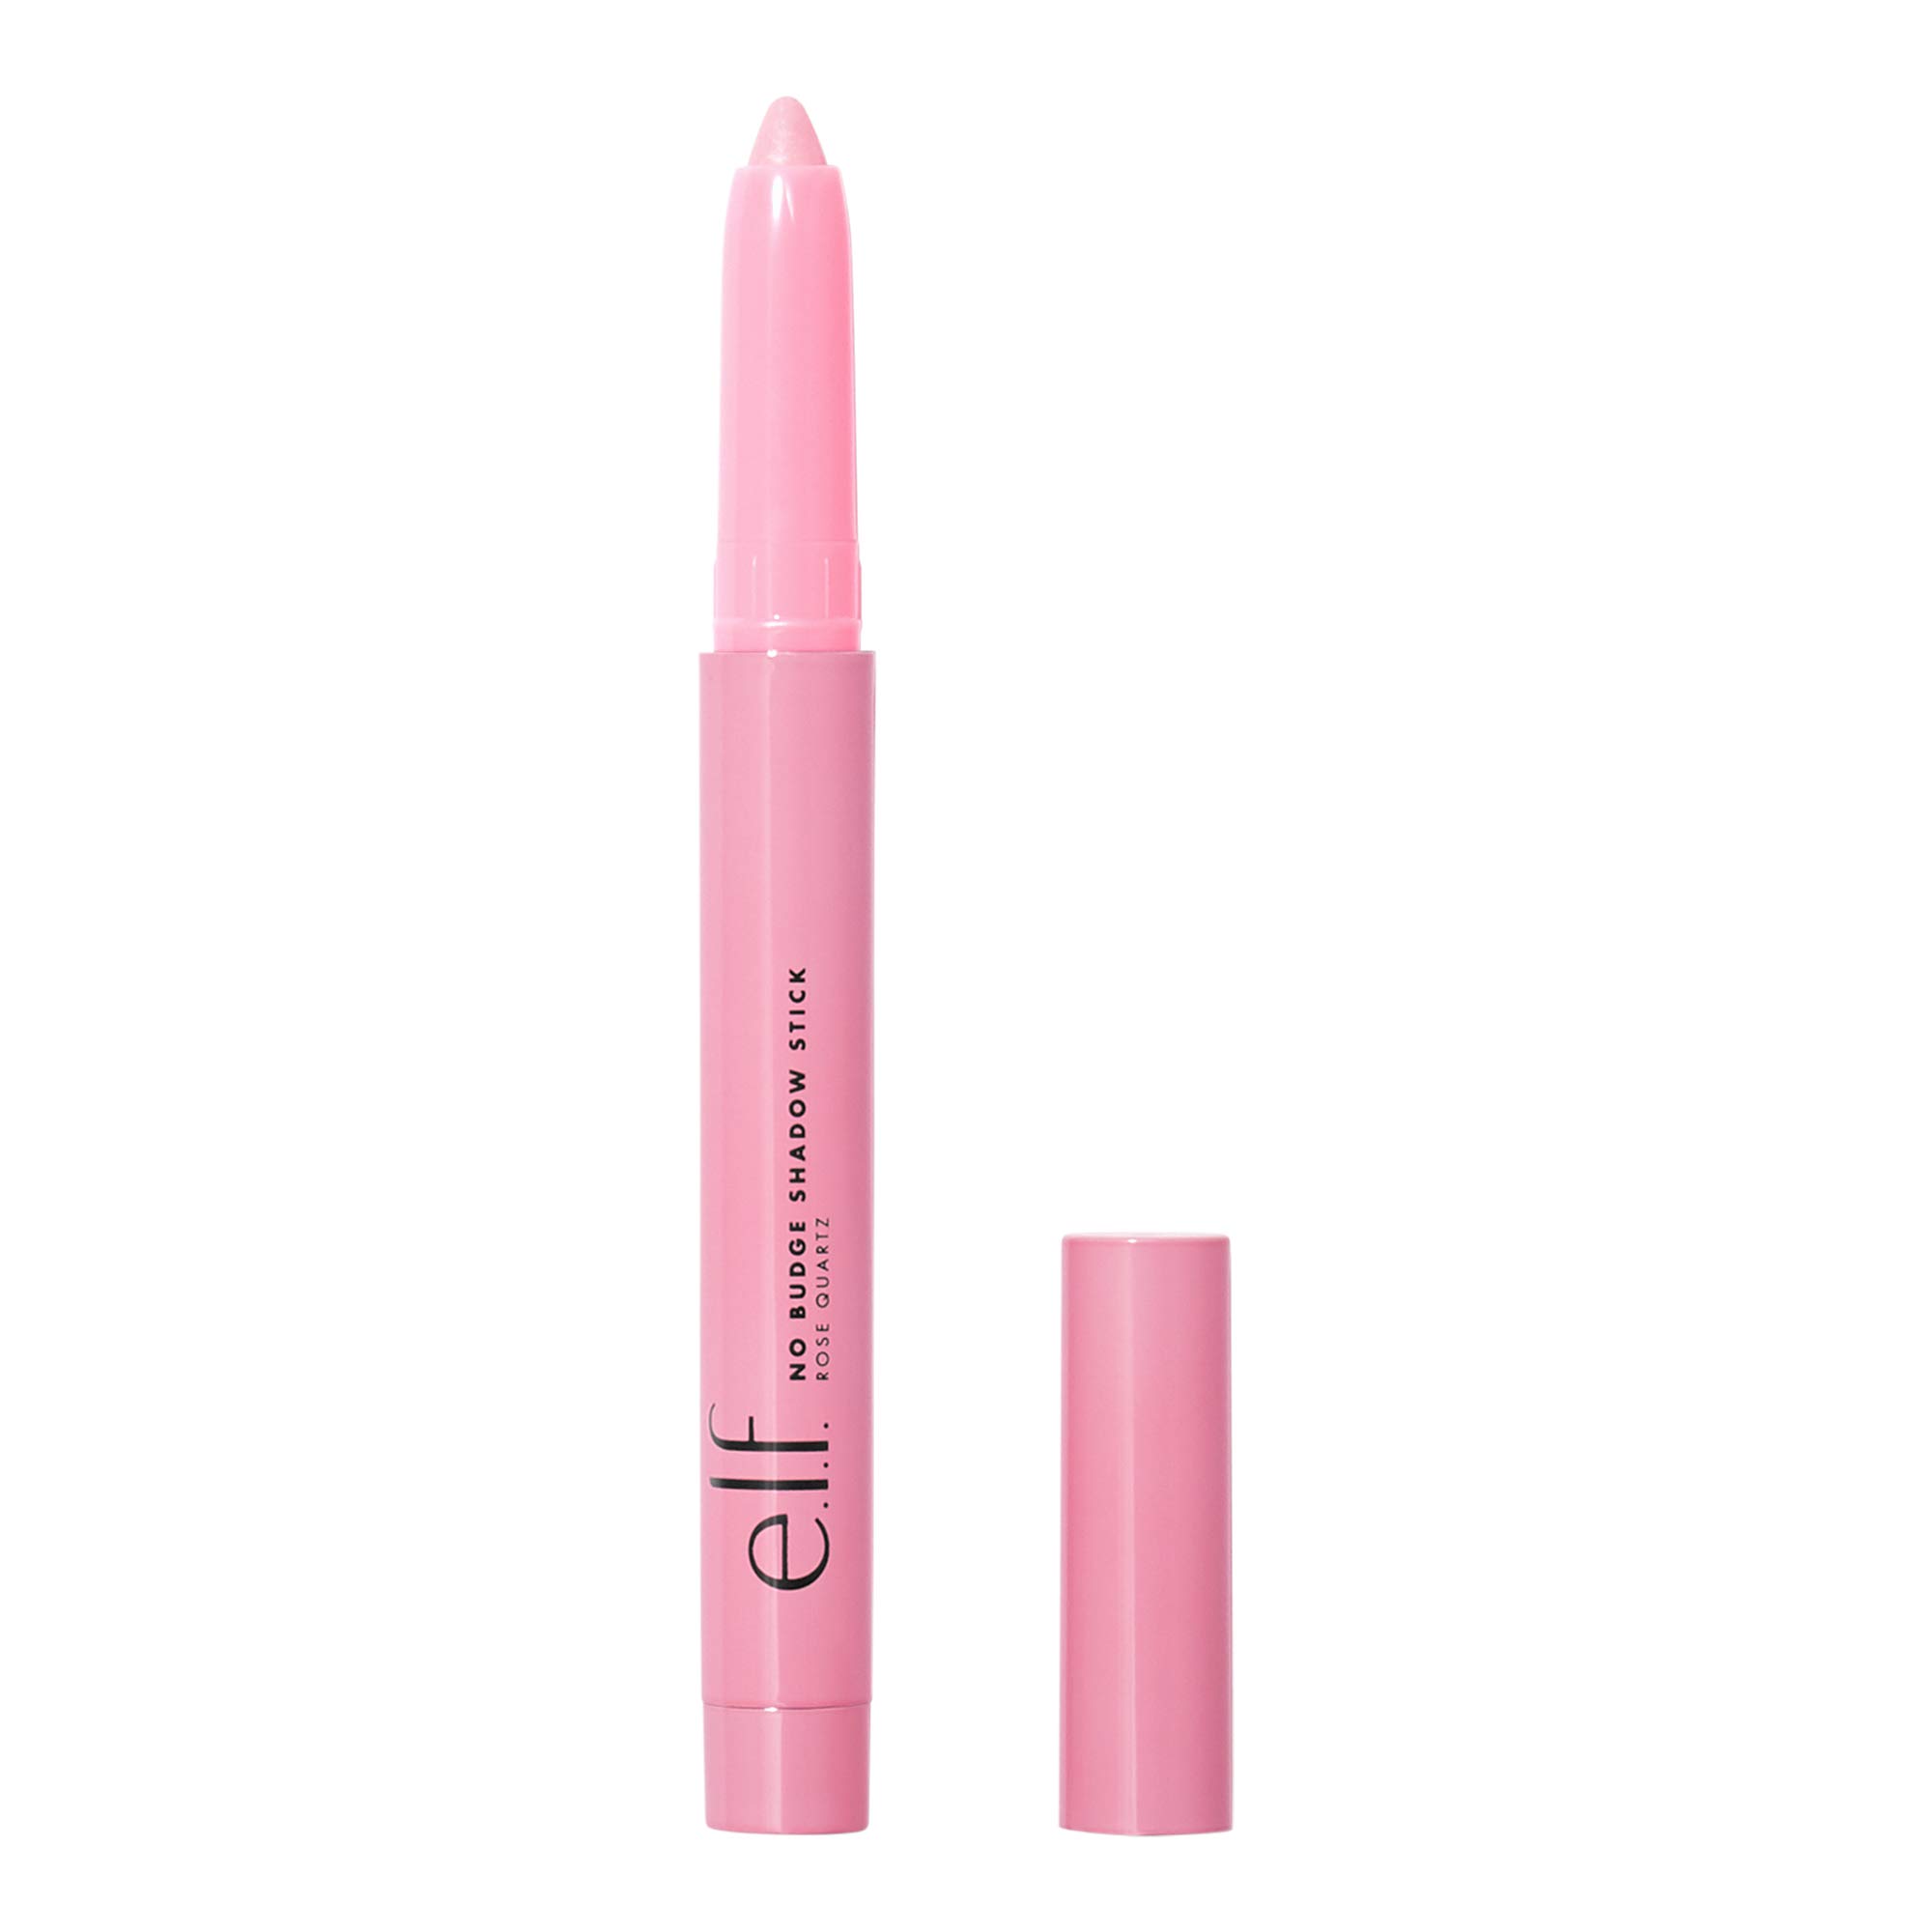 e.l.f. Cosmetics No Budge Shadow Stick, Longwear, Smudge-Proof Metallic Eyeshadow, Rose Quartz, 0.056 Oz (1.6g)